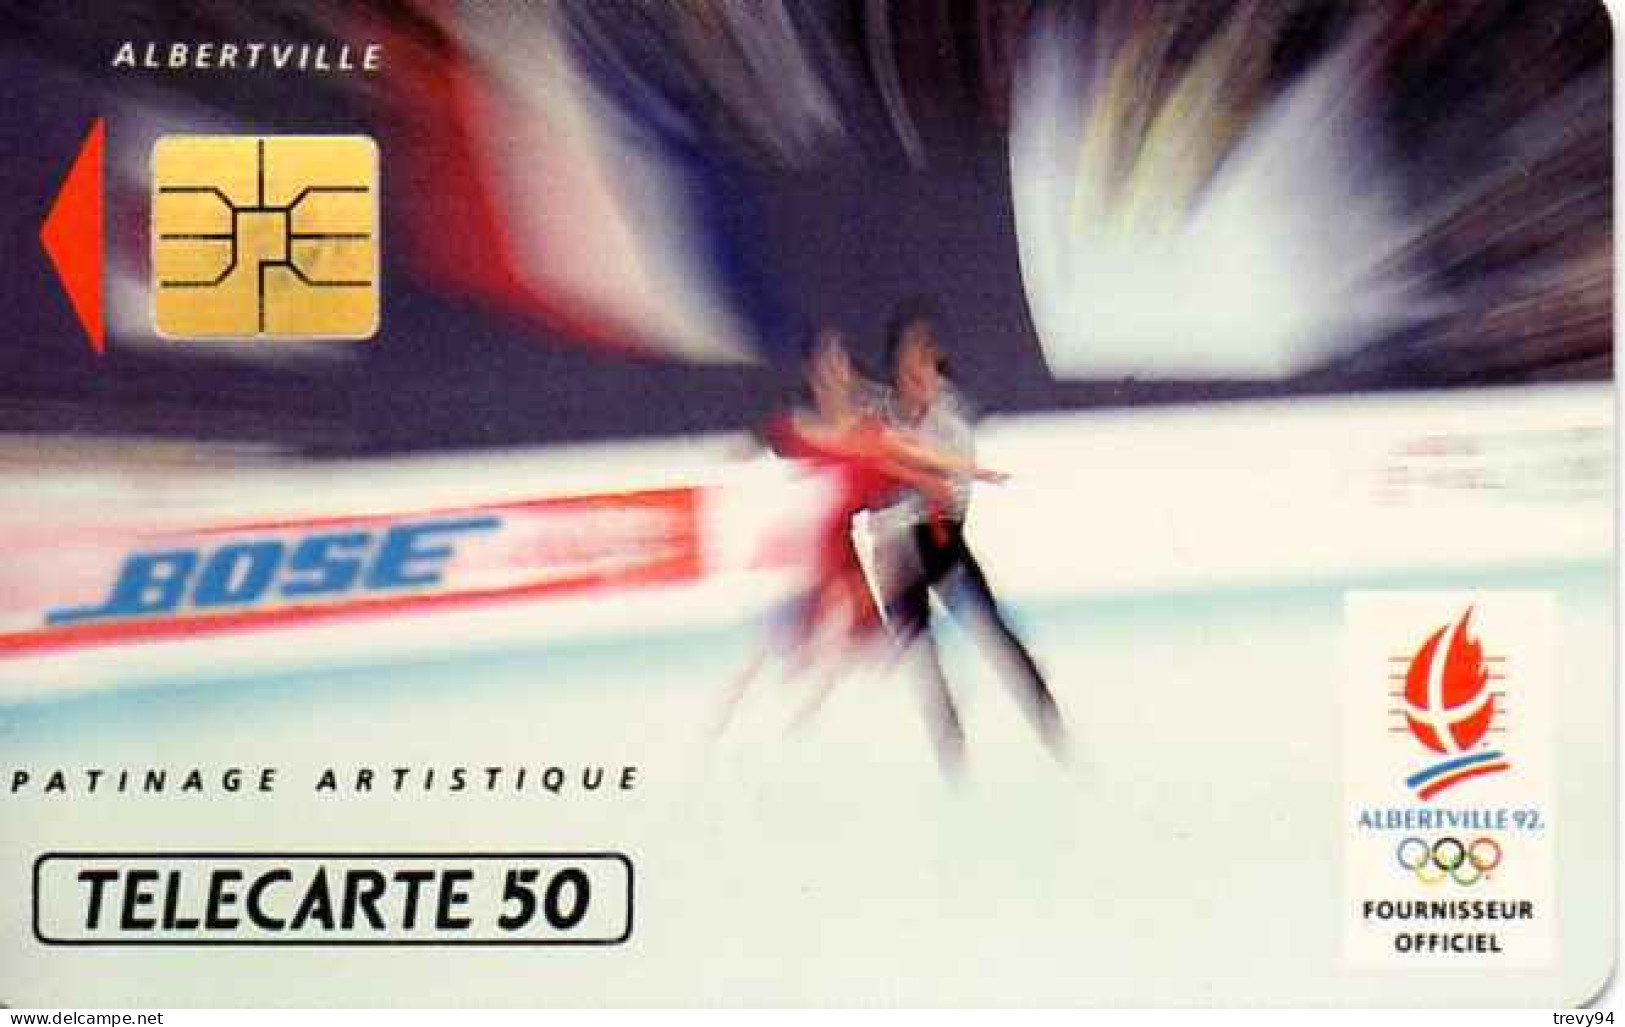 Télécartes : Carte Téléphonique › Bose - Patinage Artistique Jeux Olympique Albertville - F216 - 1991